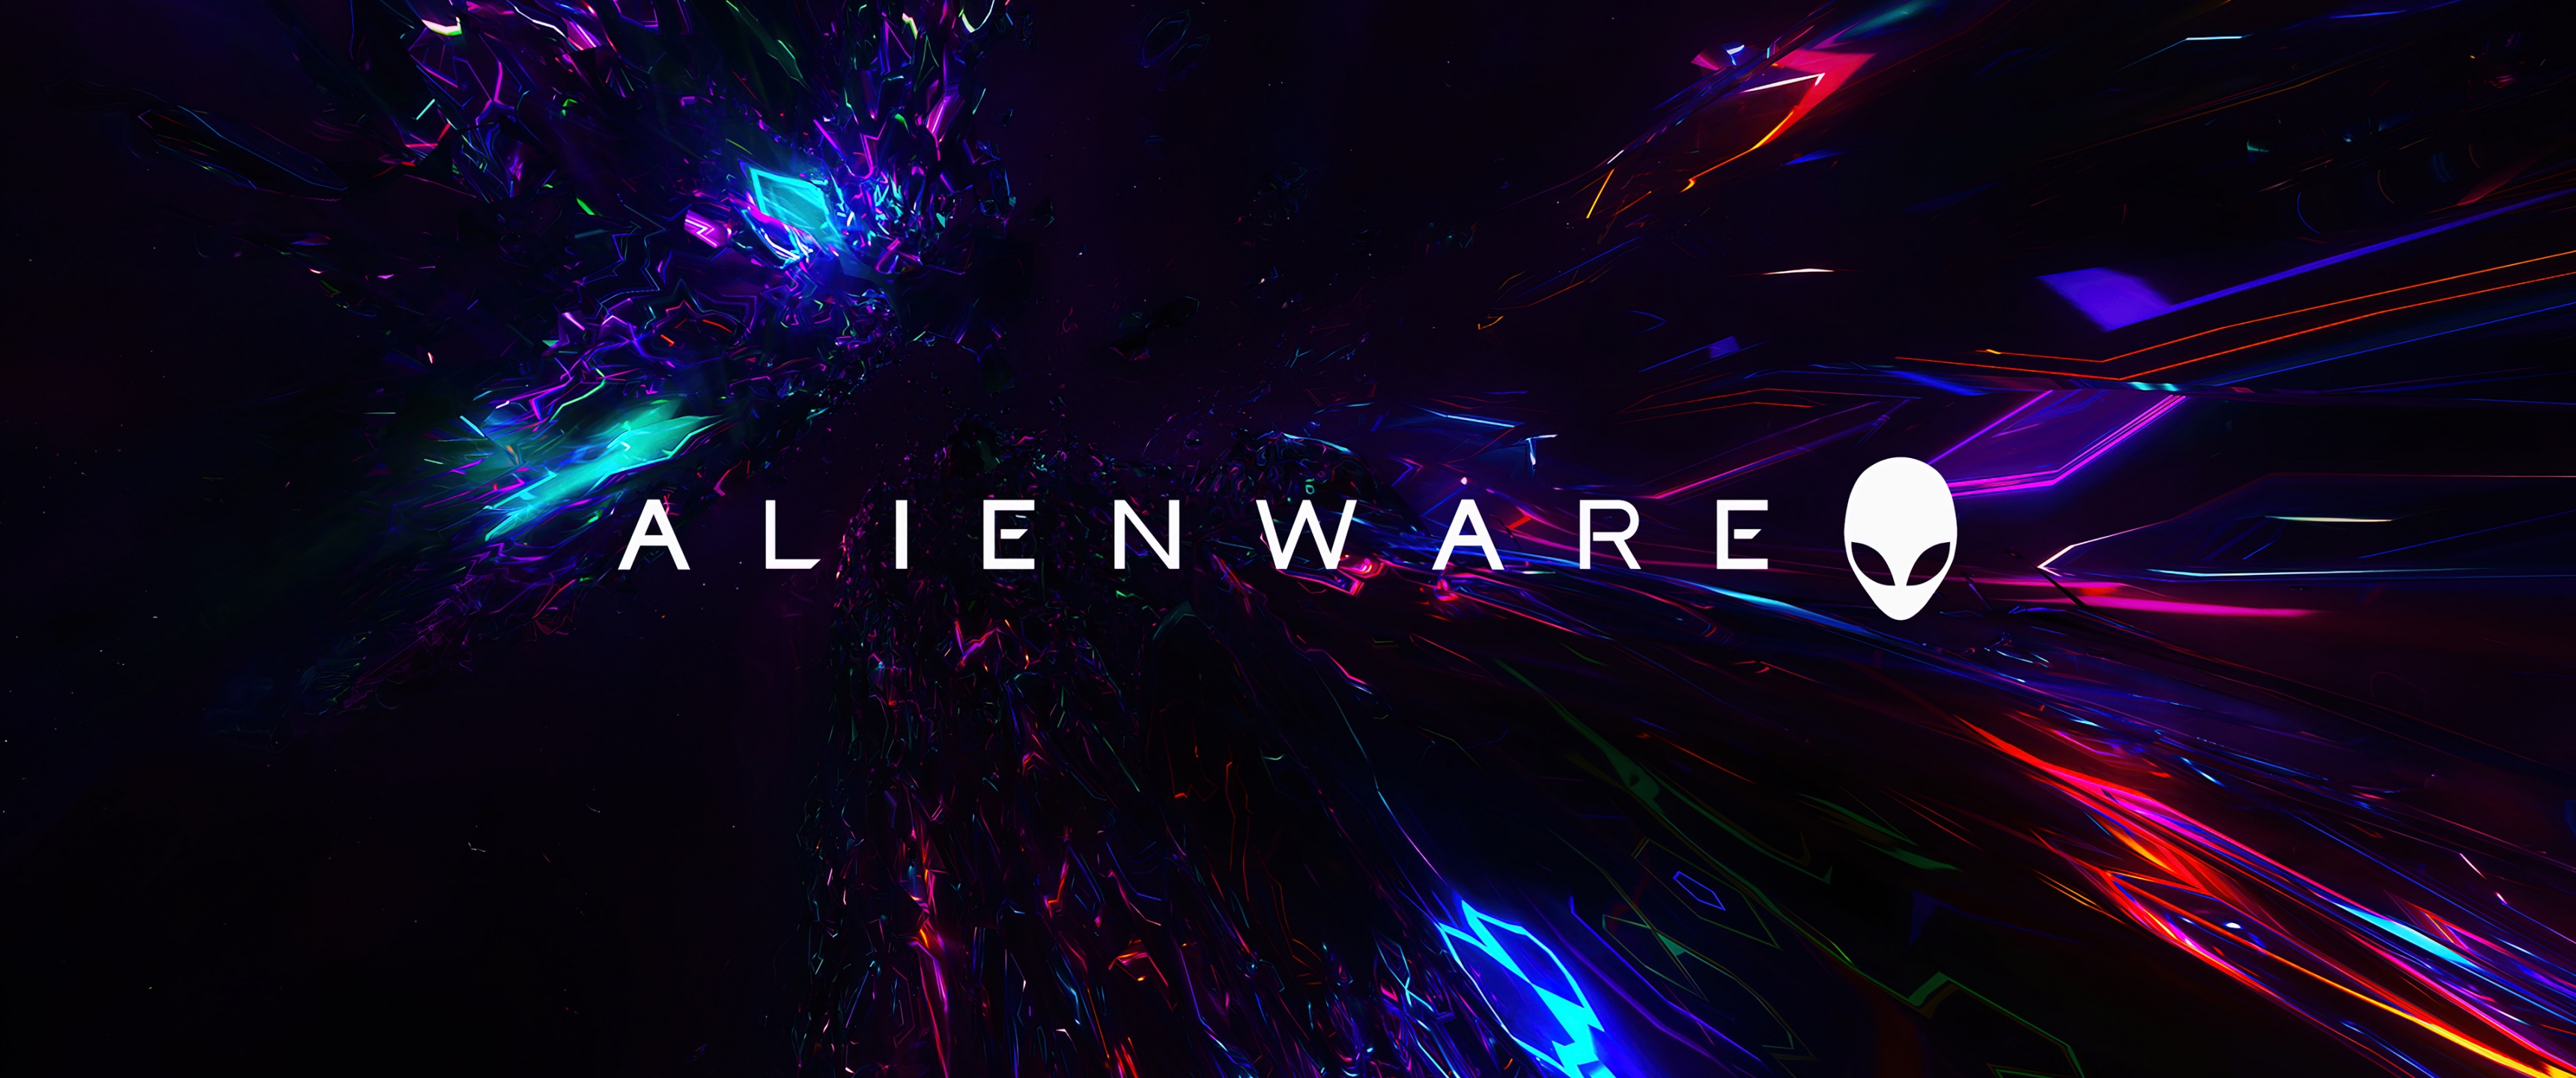 Alienware Desktop Wallpaper 3440x1440